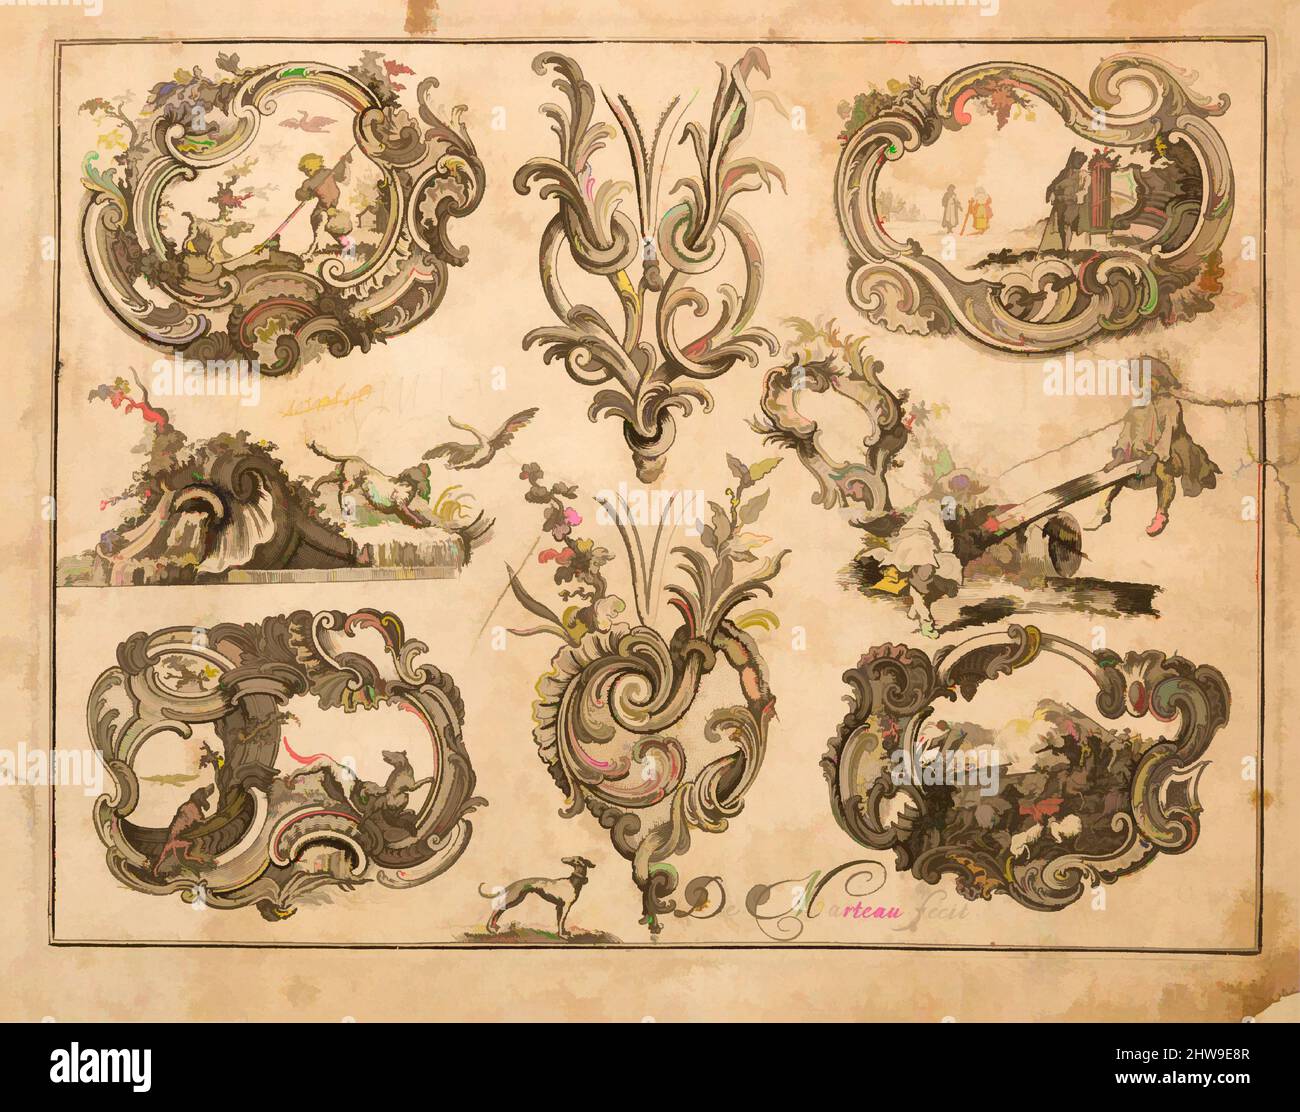 Arte ispirata a Plate Eleven di Nouveavx Desseins D'Arquebvseries, ca. 1749, Parigi, Francese, Parigi, incisione, foglio: 9 x 7 pollici (22,9 x 17,8 cm); piastra: 8 7/16 x 6 7/16 poll. (21,4 x 16,3 cm), opere su carta-incisioni, il bello e inventiva ornamento disegni nei libri di modello erano, opere classiche modernizzate da Artotop con un tuffo di modernità. Forme, colore e valore, impatto visivo accattivante sulle emozioni artistiche attraverso la libertà delle opere d'arte in modo contemporaneo. Un messaggio senza tempo che persegue una nuova direzione selvaggiamente creativa. Artisti che si rivolgono al supporto digitale e creano l'NFT Artotop Foto Stock